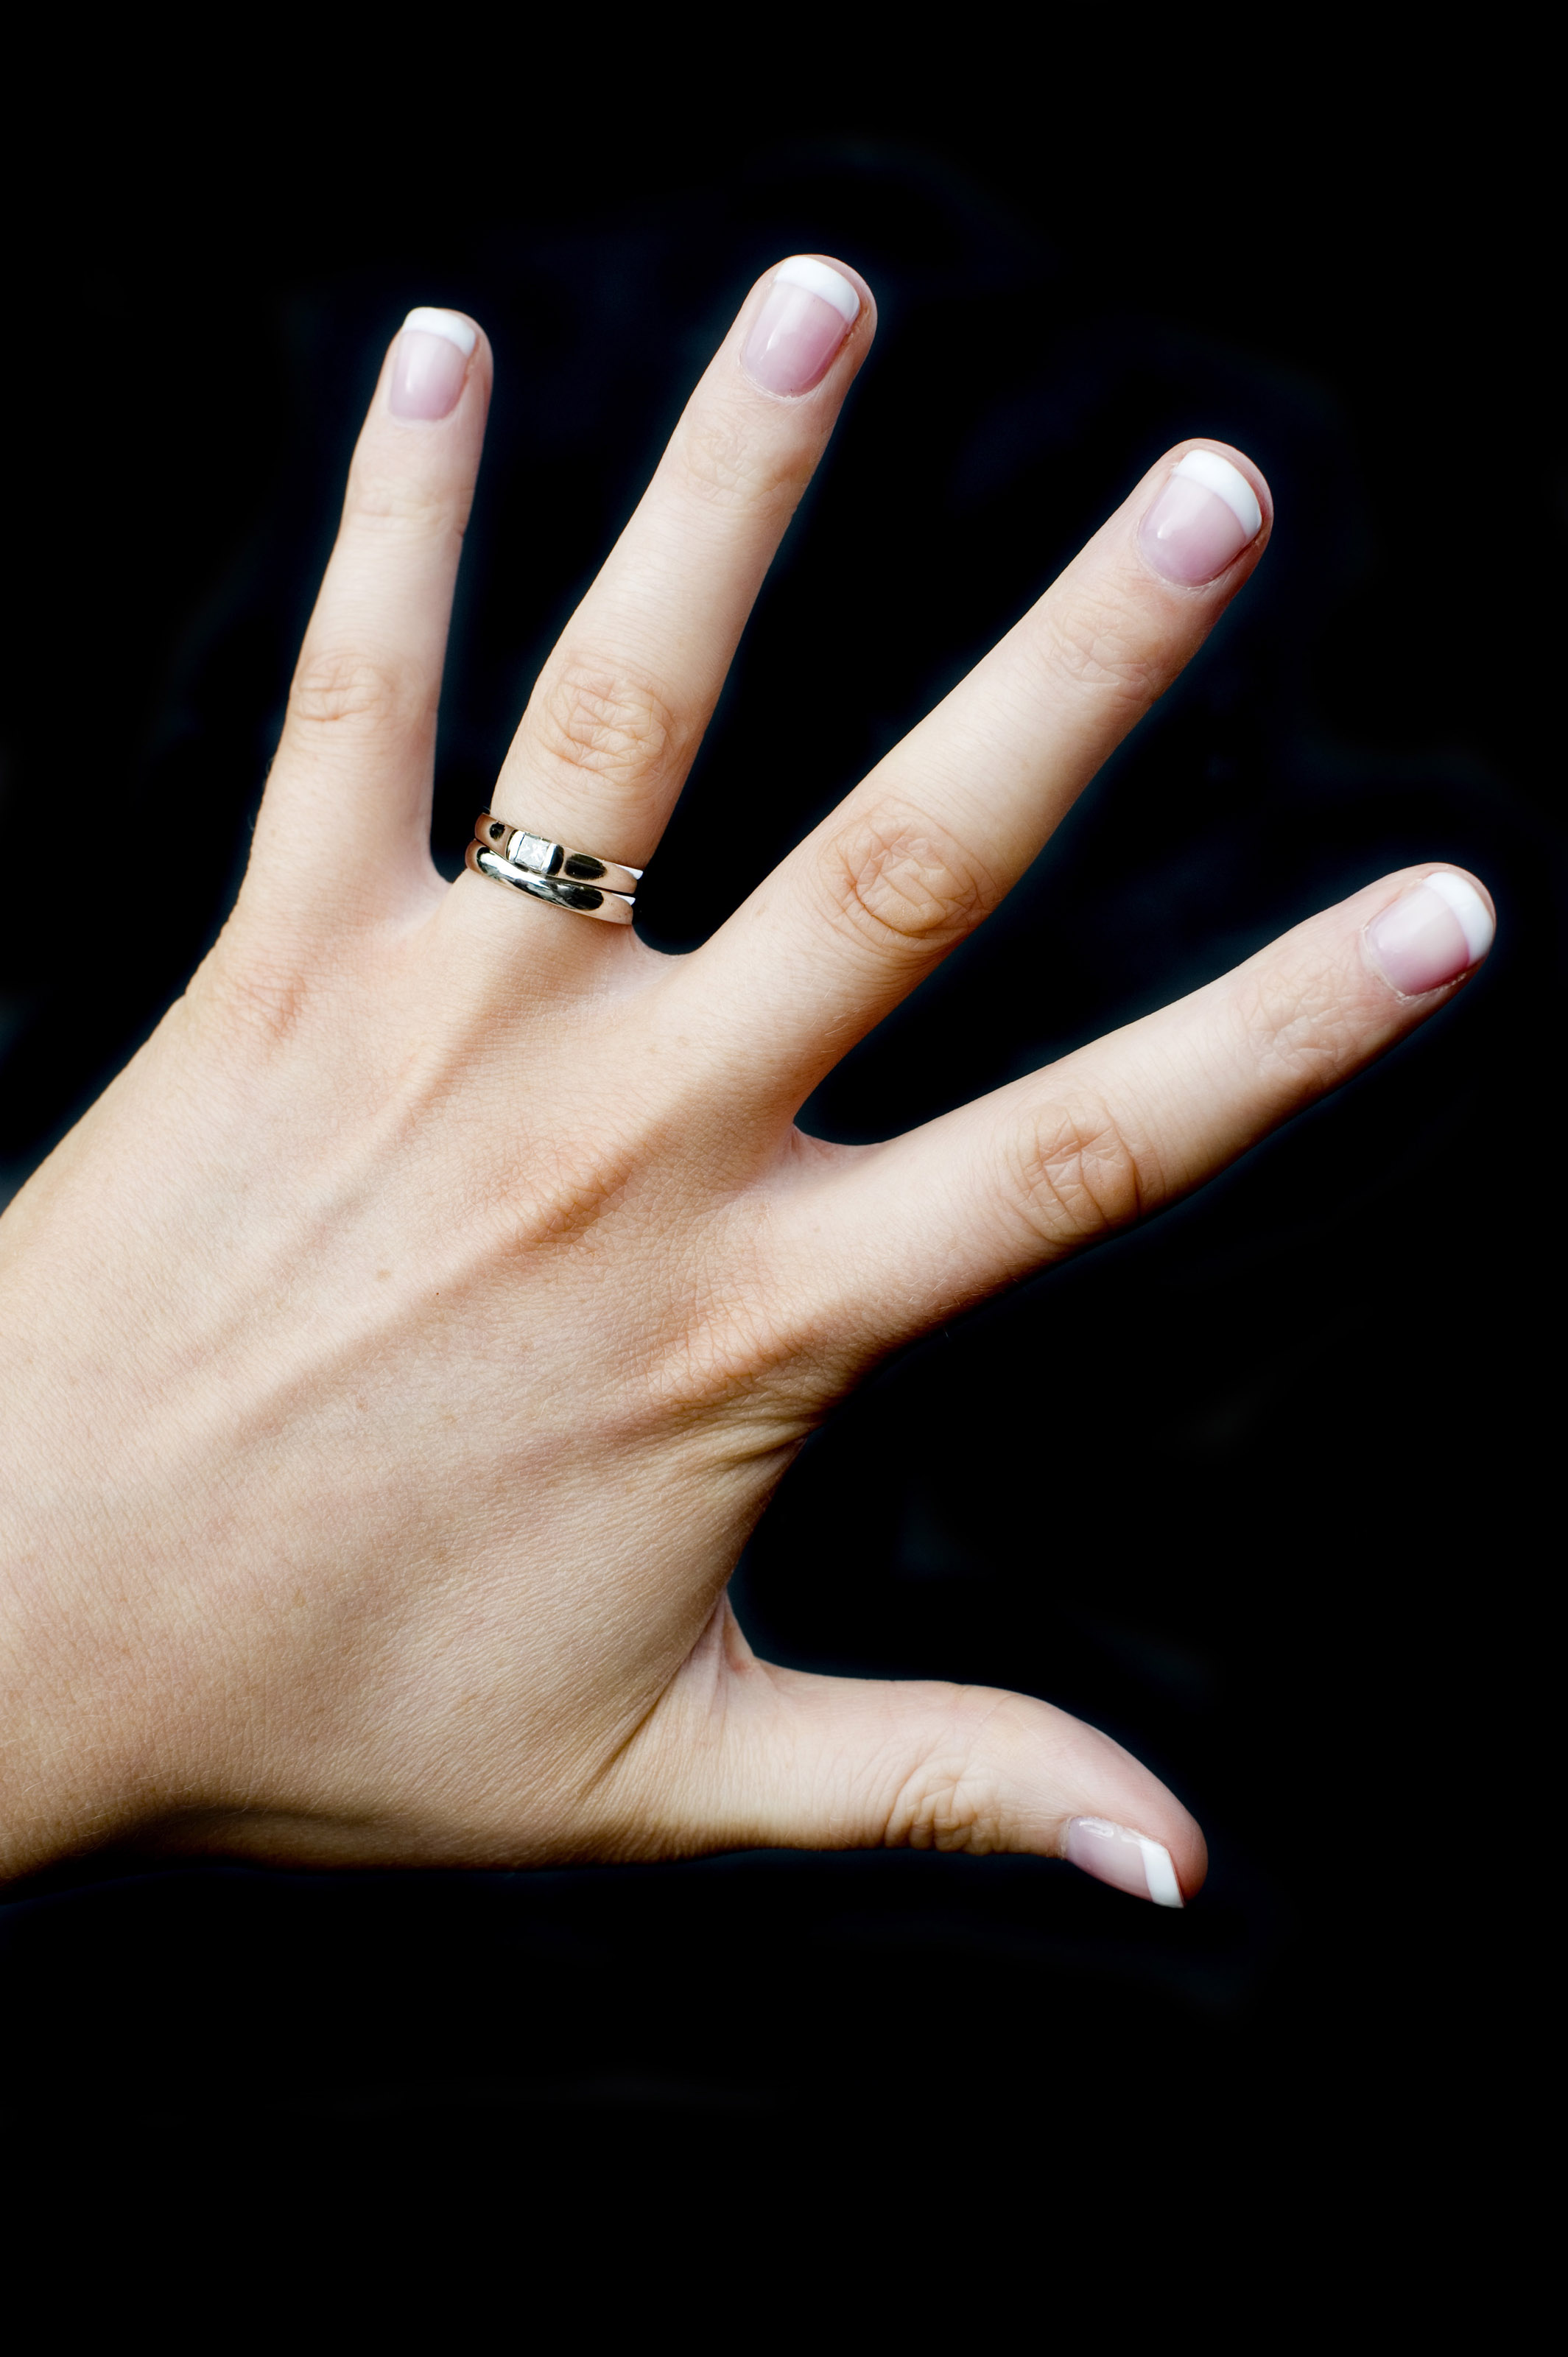 Тонкий пальчик. Обручальное кольцо на пальце. Красивые пальцы. Кольцо на безымянном пальце. Красивые пальцы рук.